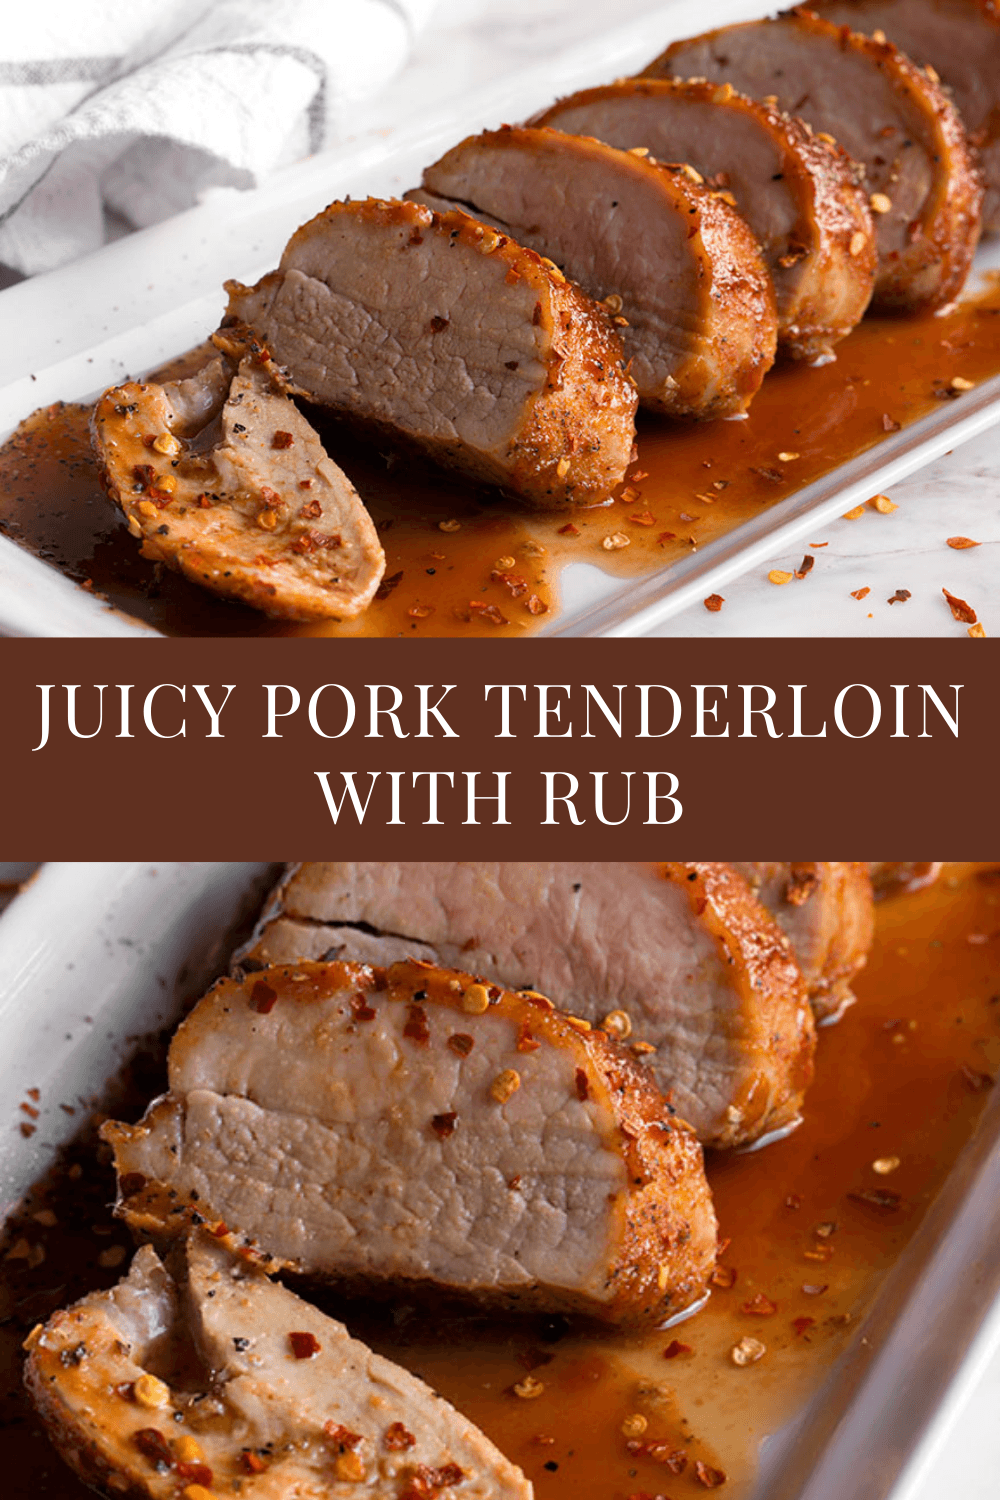 Juicy Pork Tenderloin with Rub Recipe